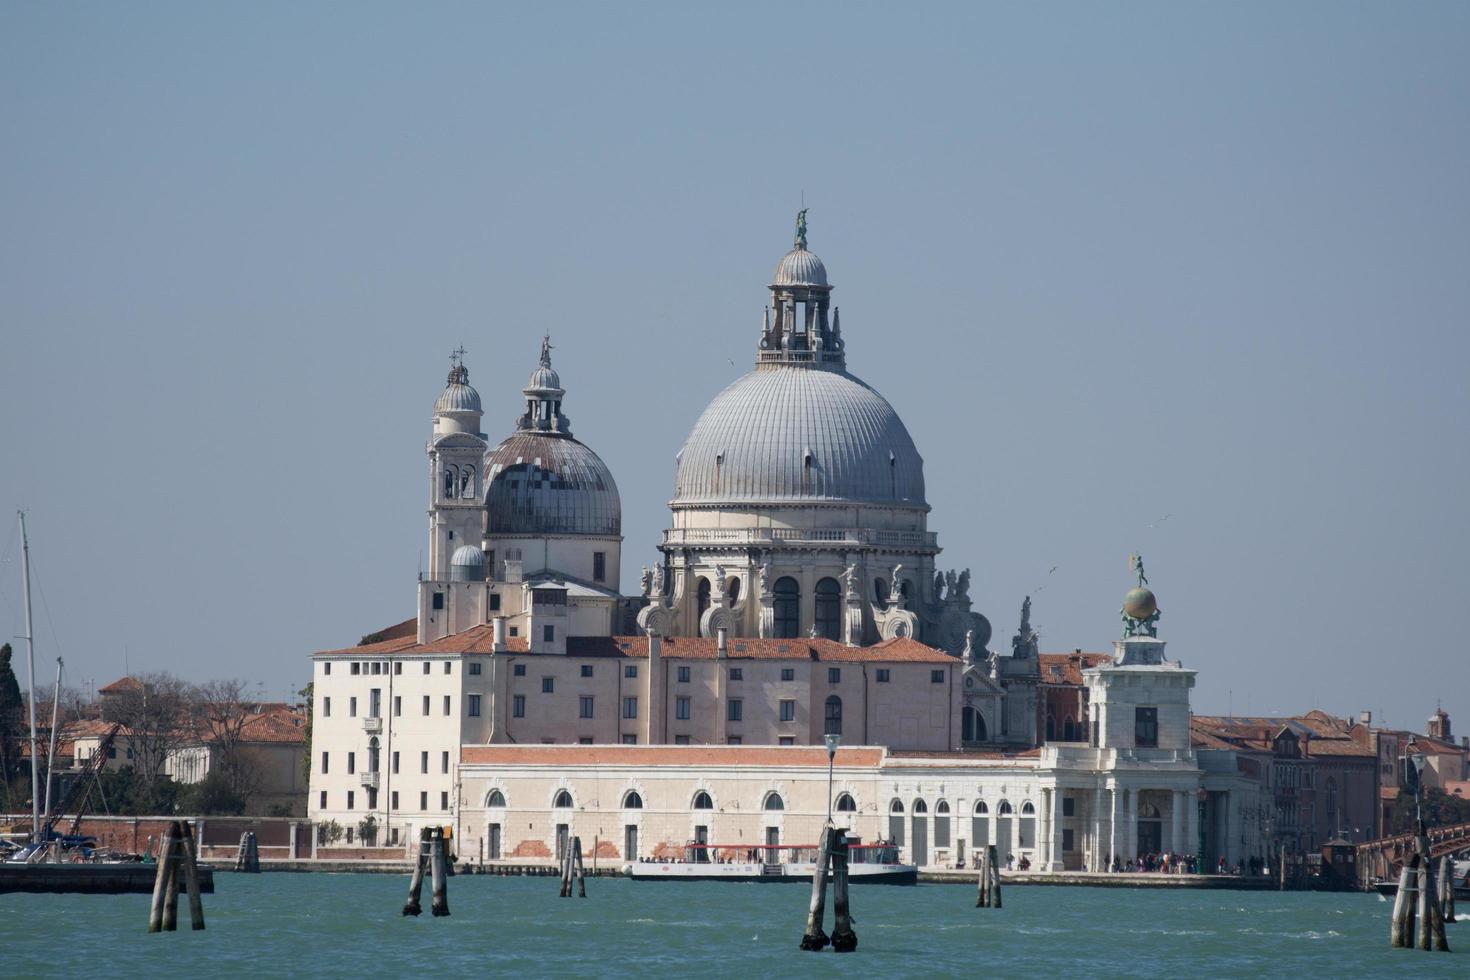 veneza, itália 2019- catedral santa maria della salute foto